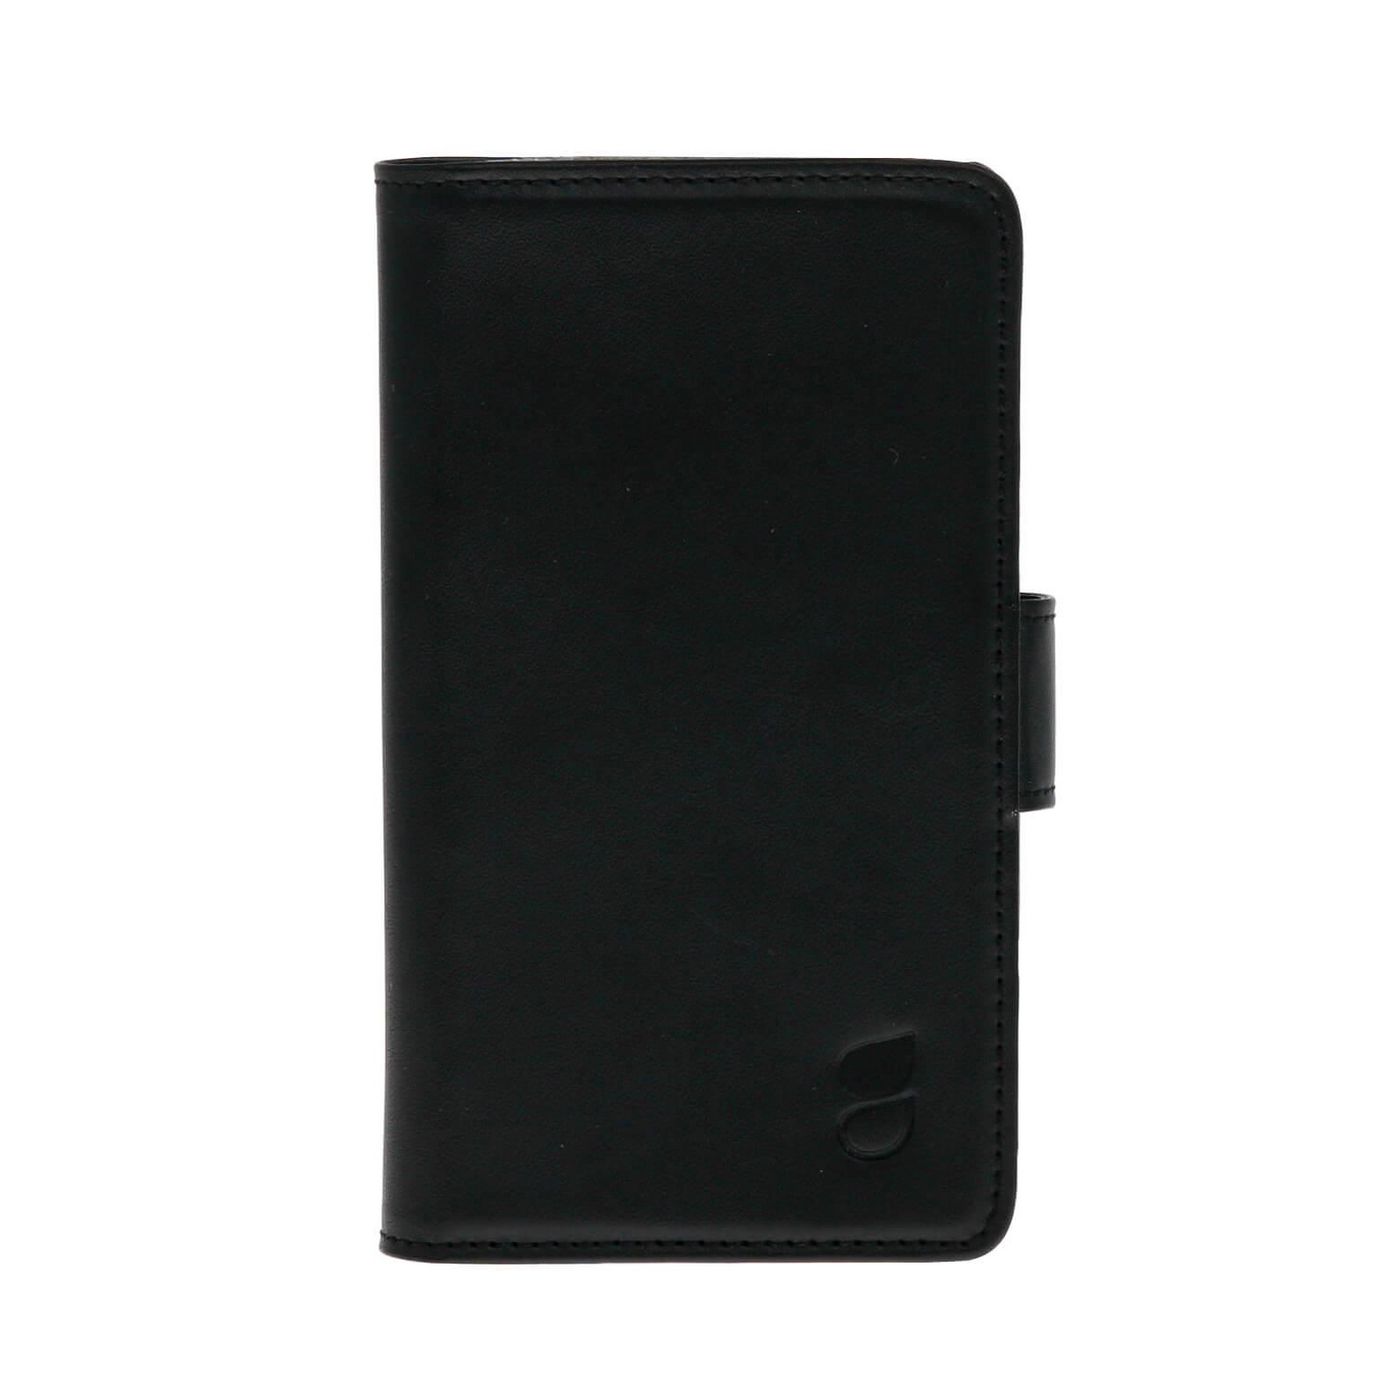 Gear 658789 LG Nexus 5X Wallet blk Leth. f 